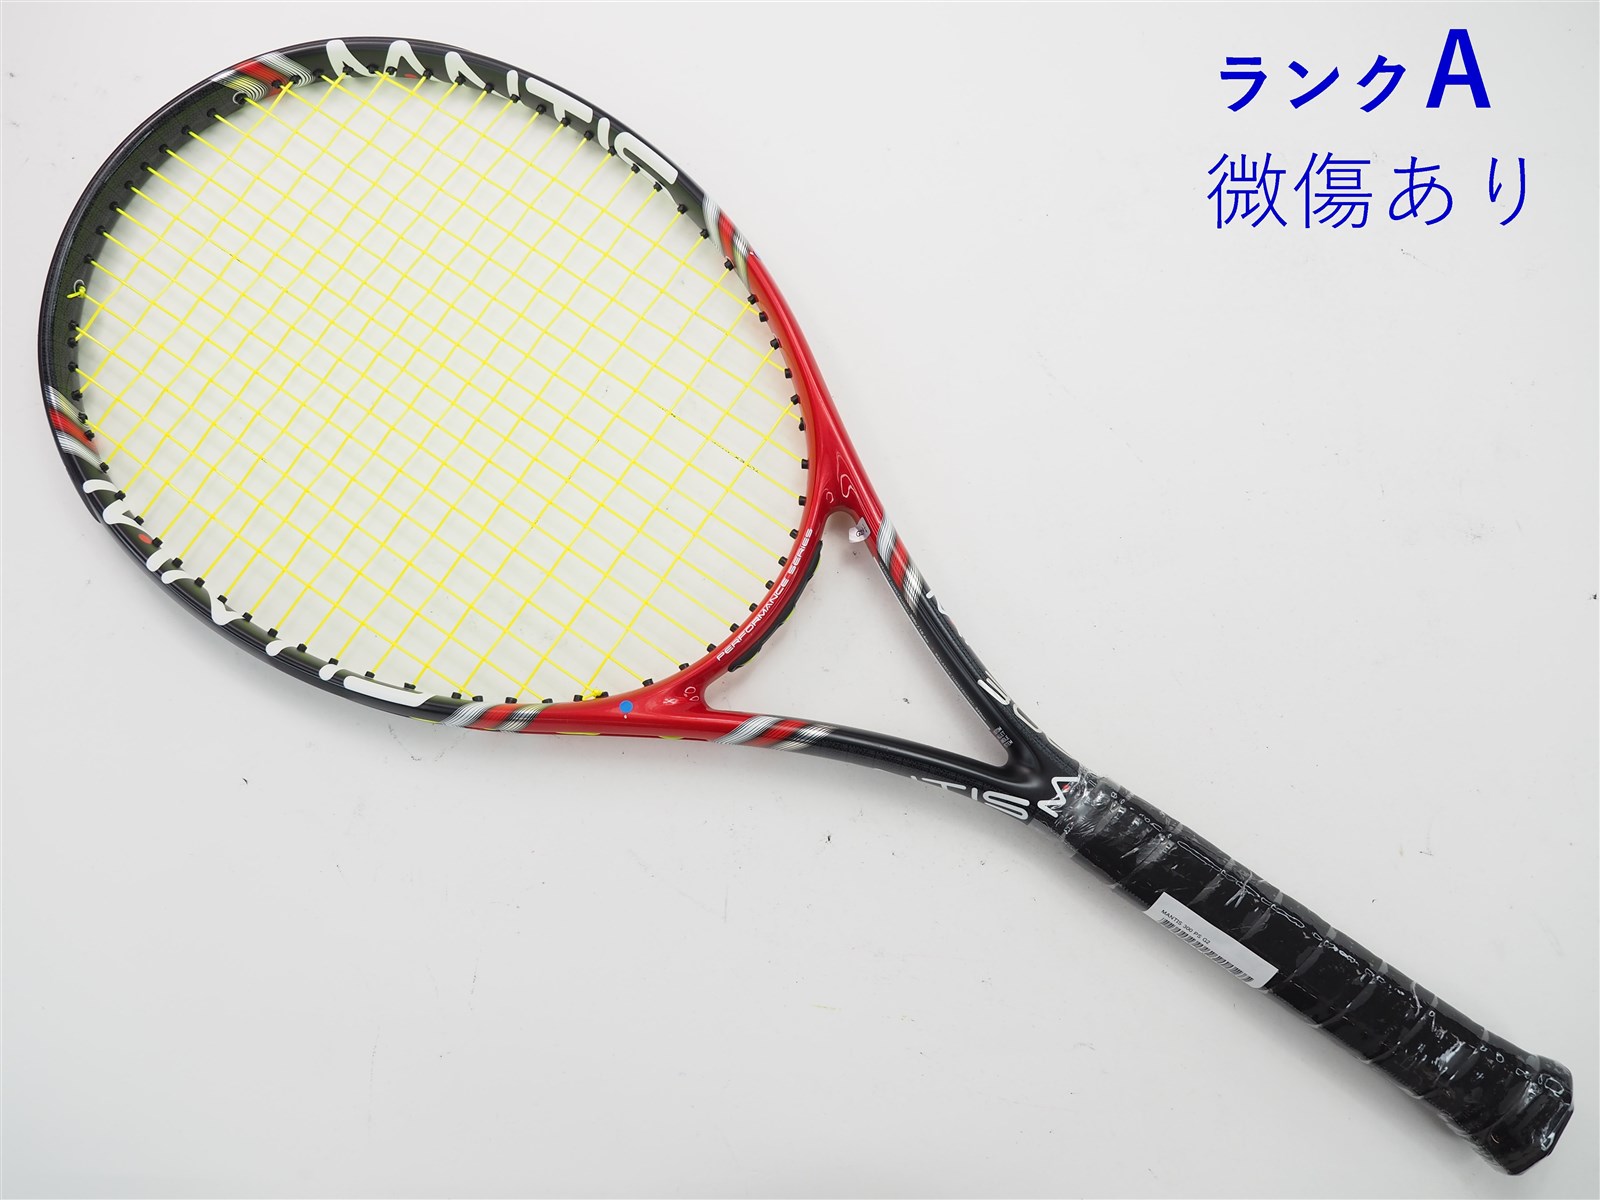 【中古】マンティス マンティス 300 PSMANTIS MANTIS 300 PS(G2)【中古 テニスラケット】【送料無料】